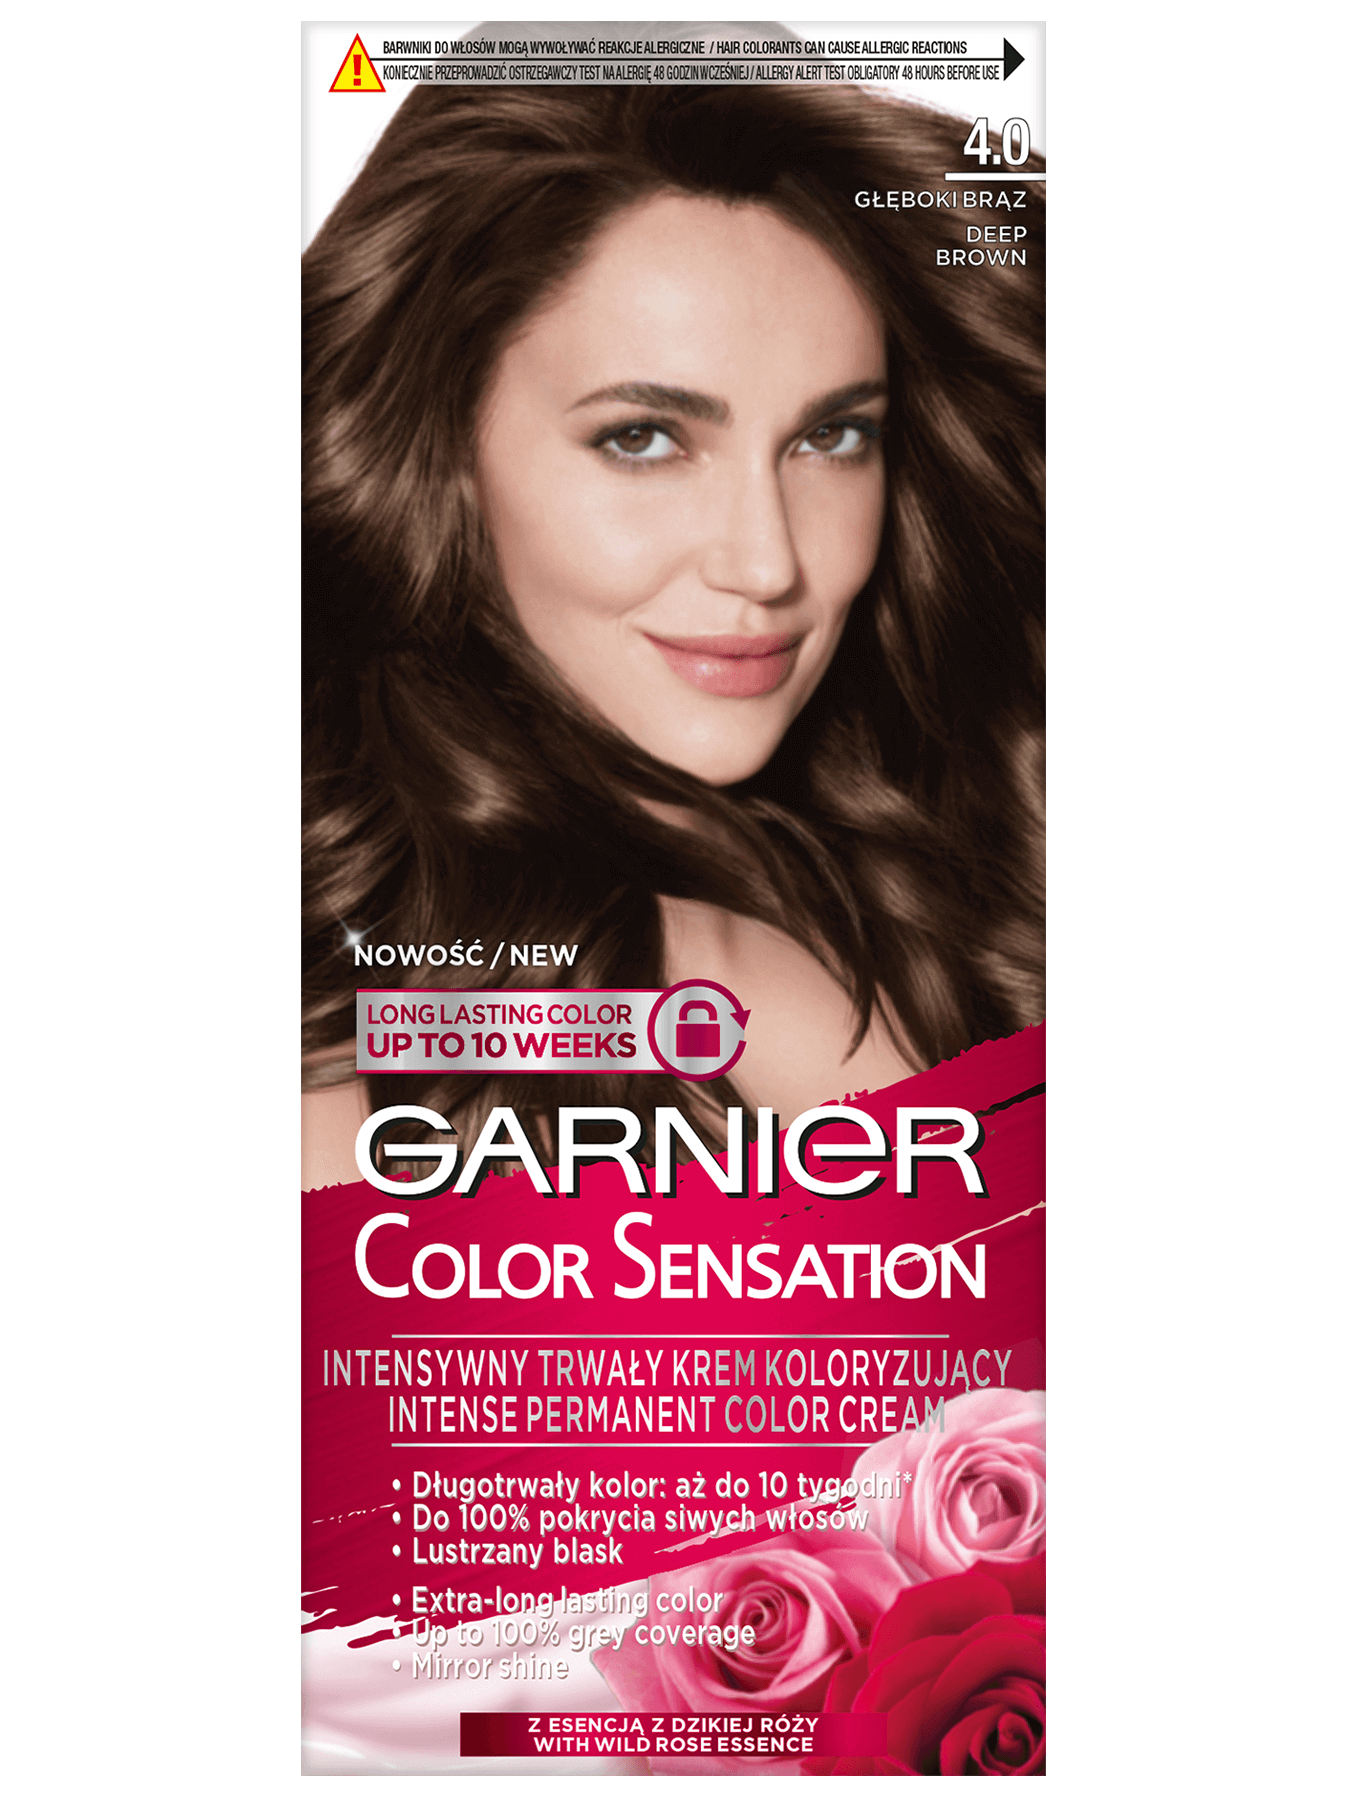 garnier color sensation 4 0 gleboki braz 1350x1800